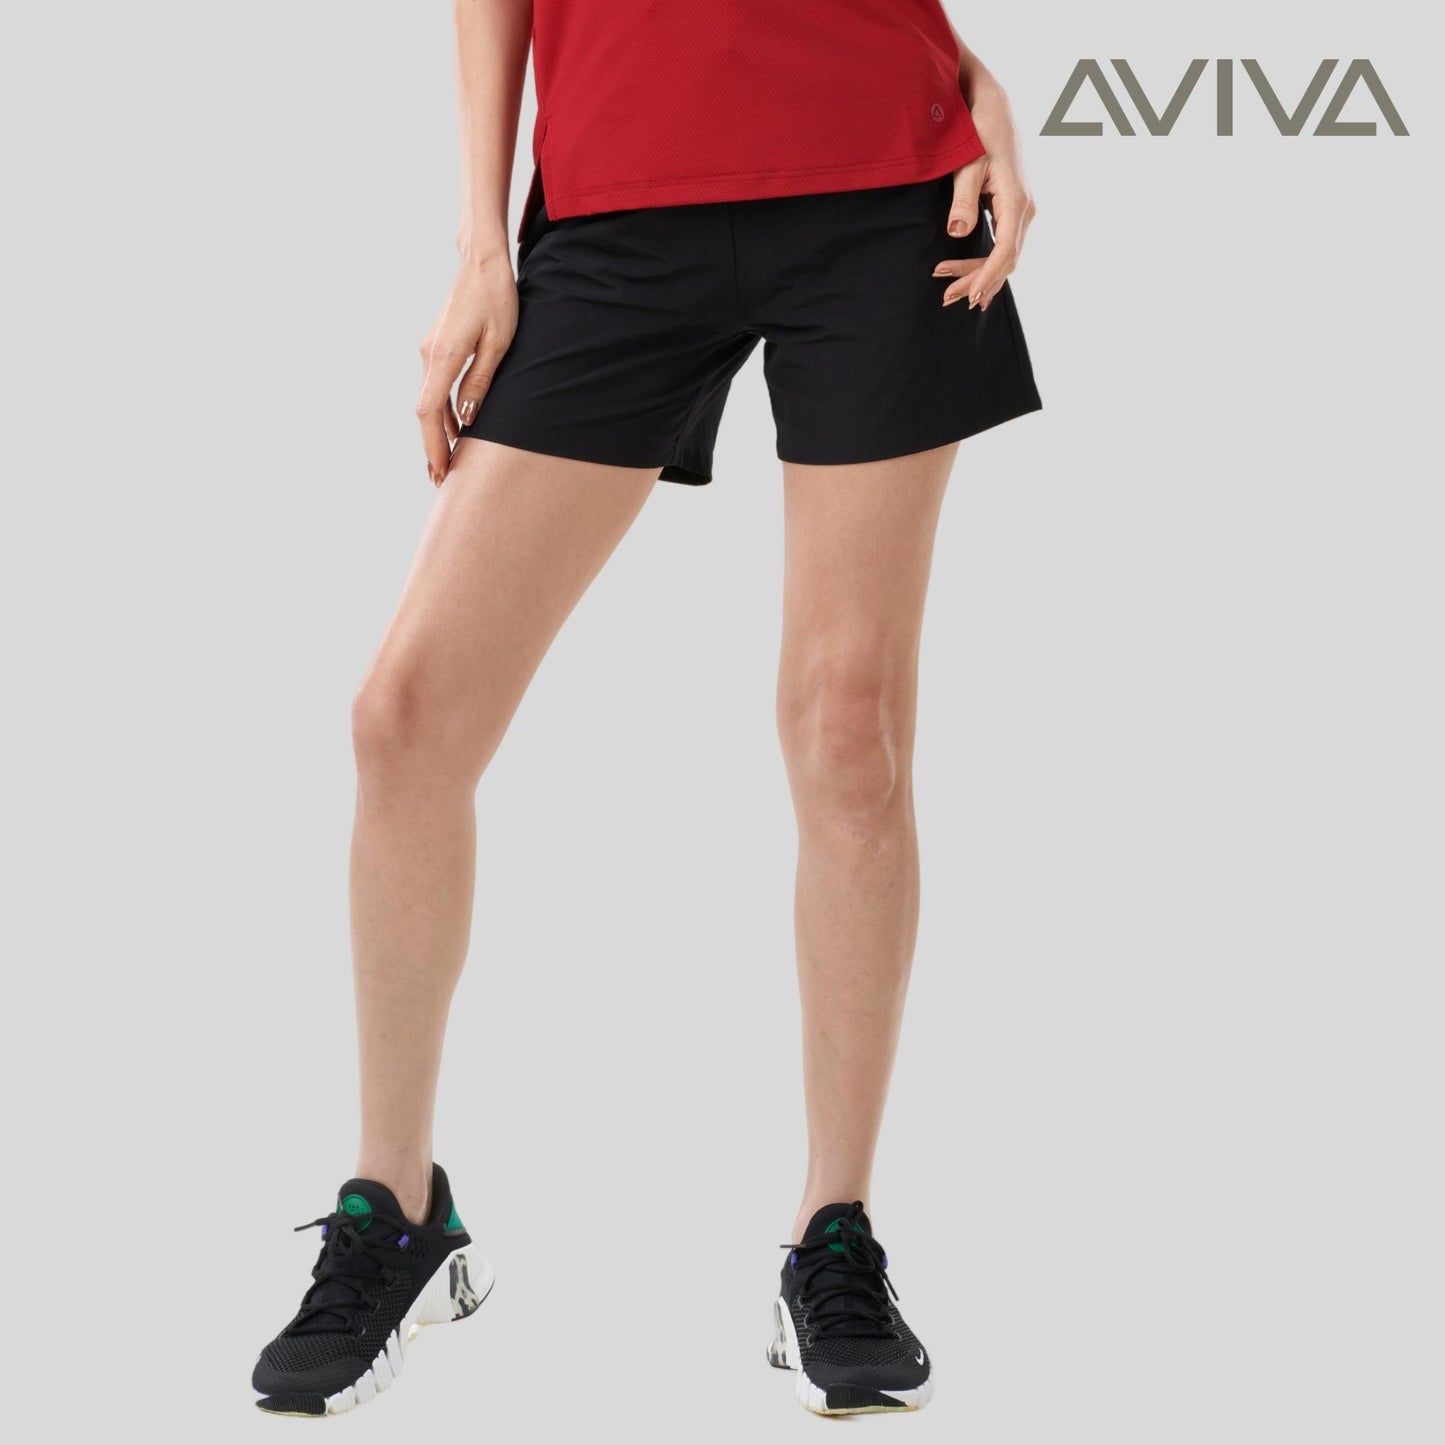 Aviva UV Protection Leisure Women Short Pants (81-2066)